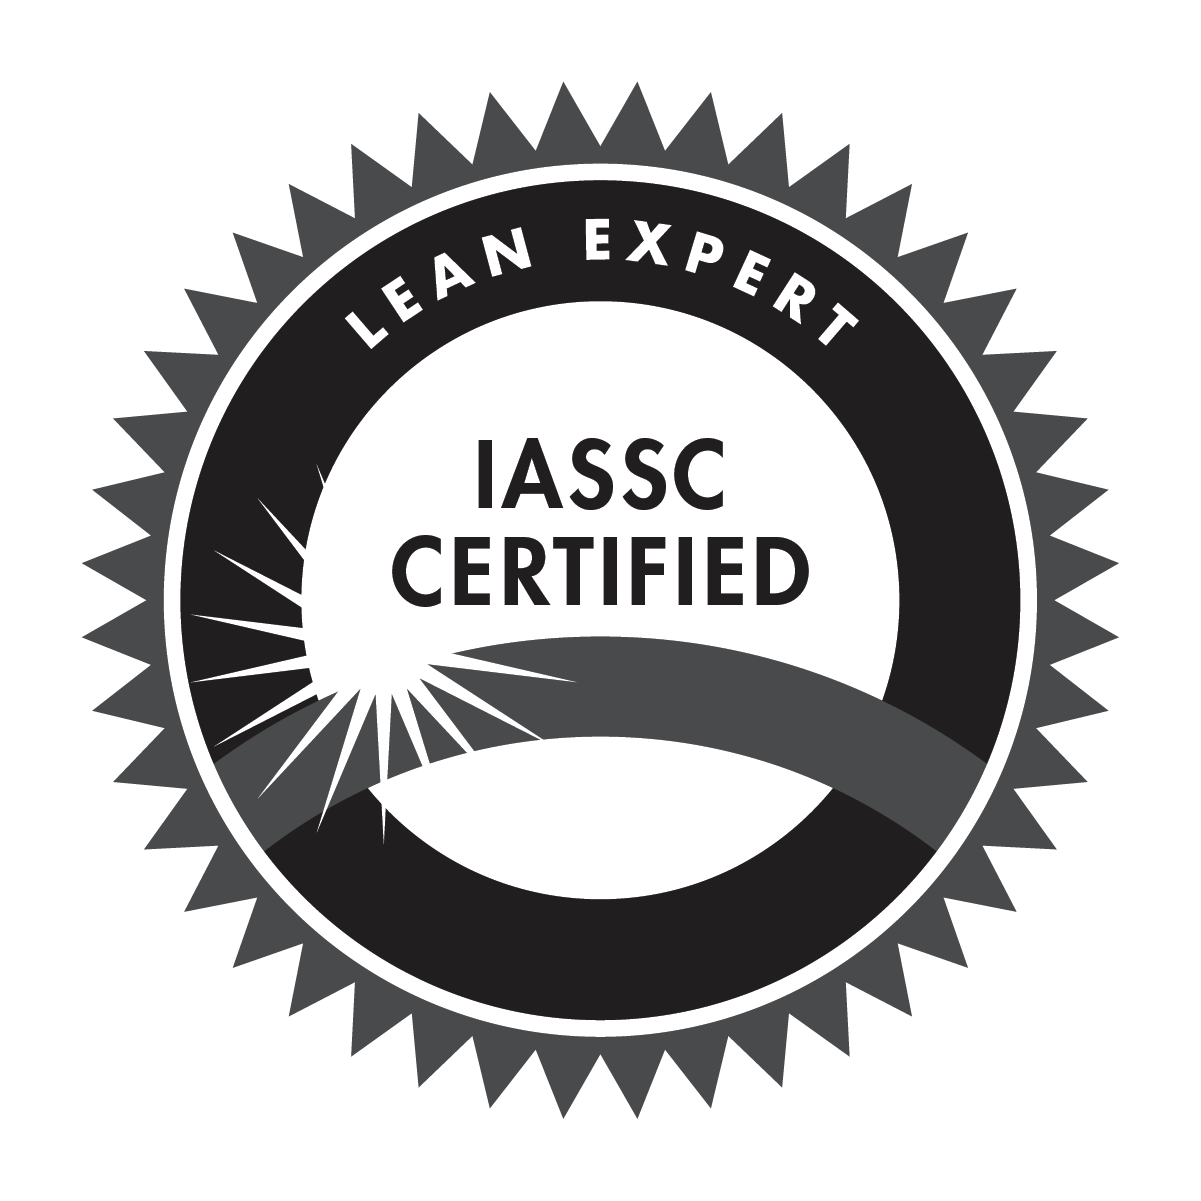 IASSC Lean Expert